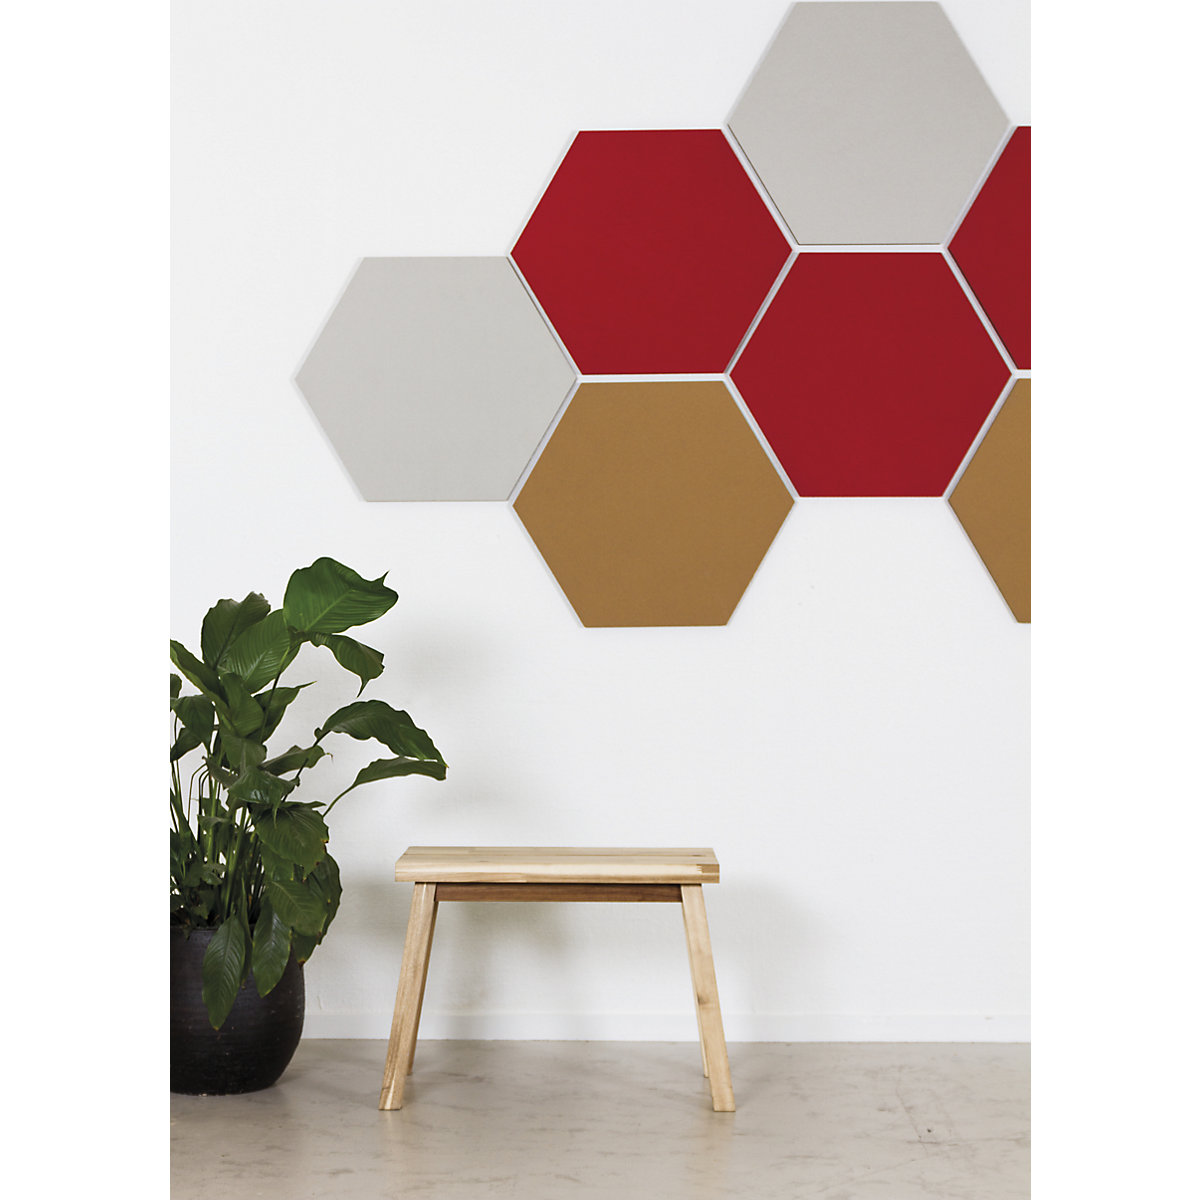 Quadro de pinos com design hexagonal – Chameleon (Imagem do produto 10)-9